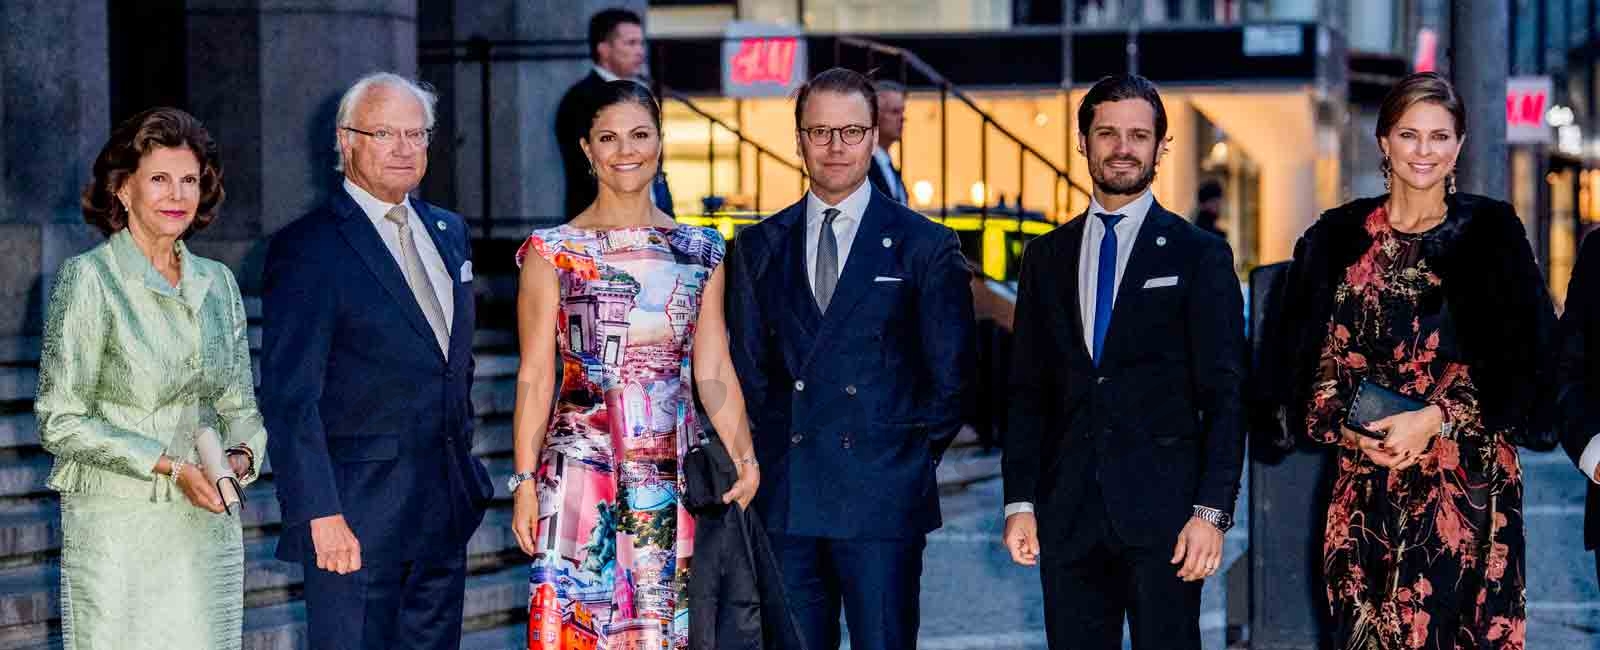 La Familia Real de Suecia, de concierto con motivo de la apertura del Parlamento